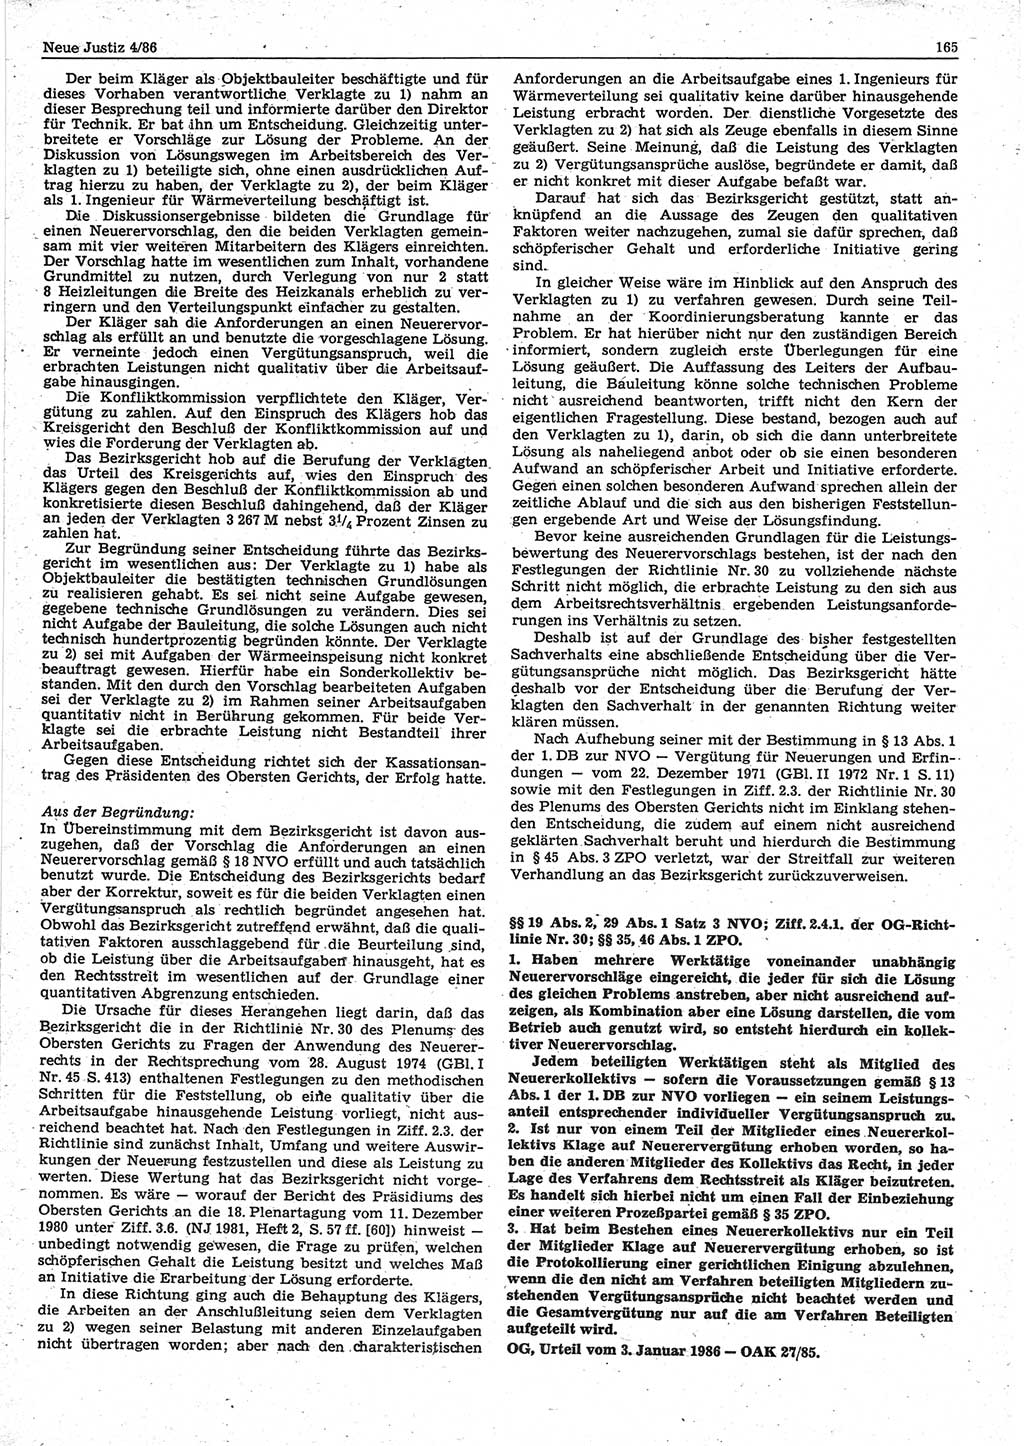 Neue Justiz (NJ), Zeitschrift für sozialistisches Recht und Gesetzlichkeit [Deutsche Demokratische Republik (DDR)], 40. Jahrgang 1986, Seite 165 (NJ DDR 1986, S. 165)